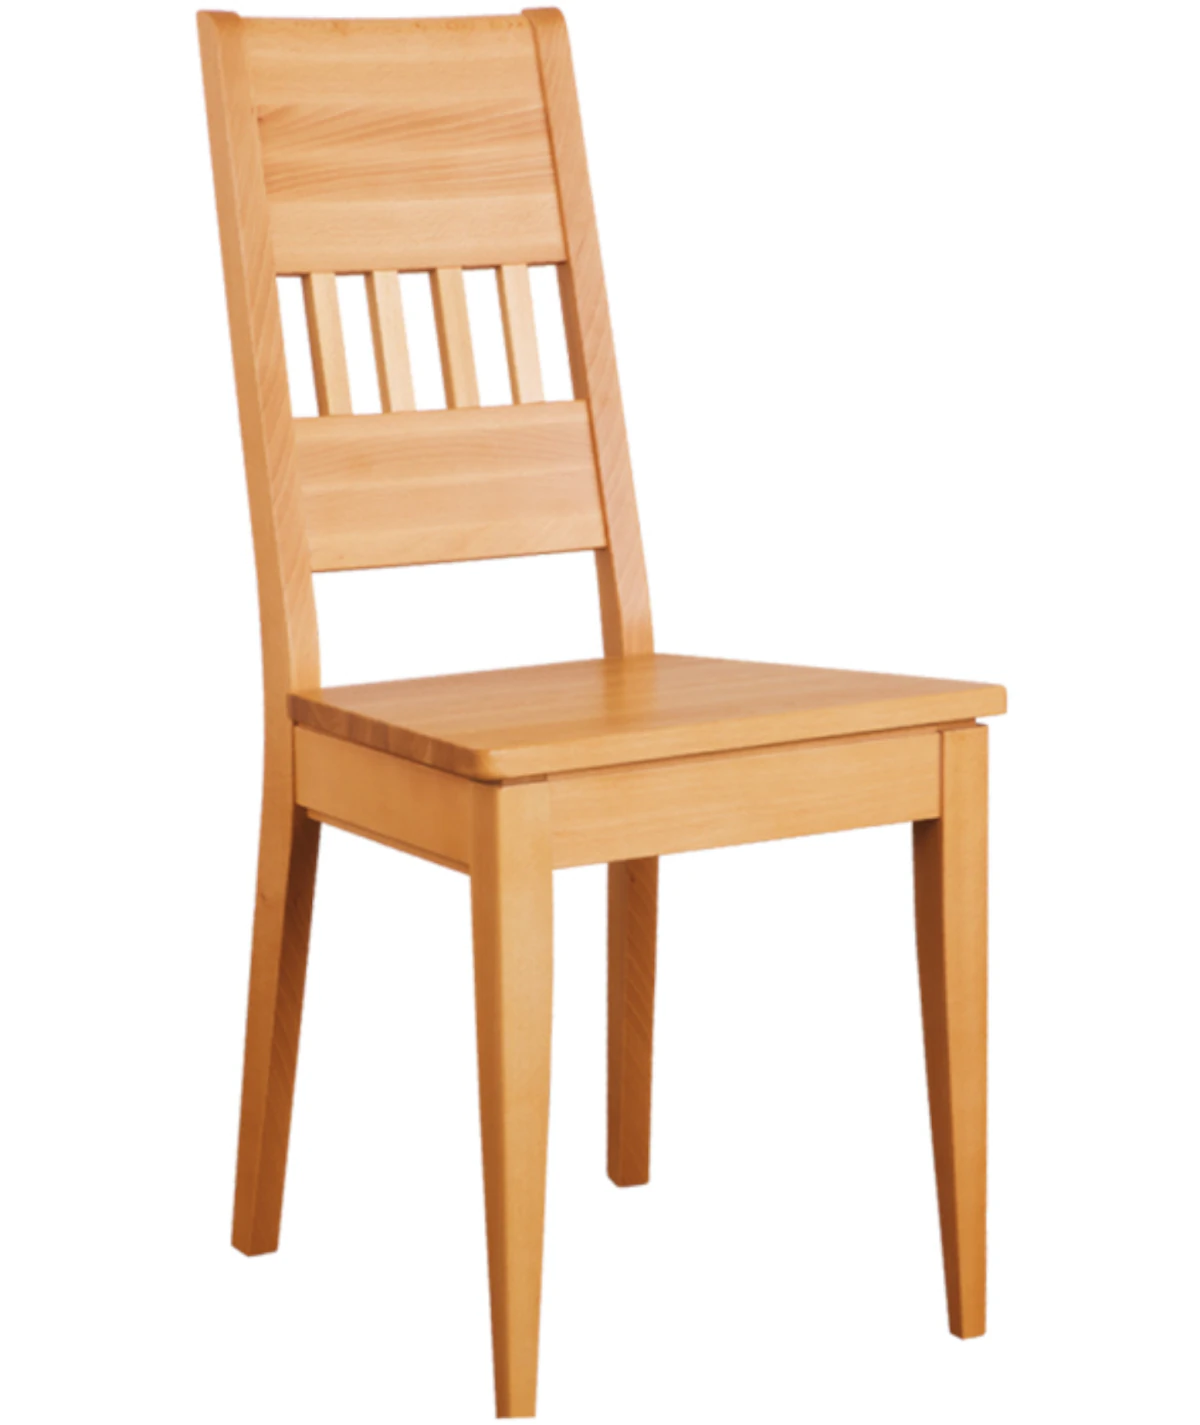 Krzesło bukowe KT 175 DREWMAX